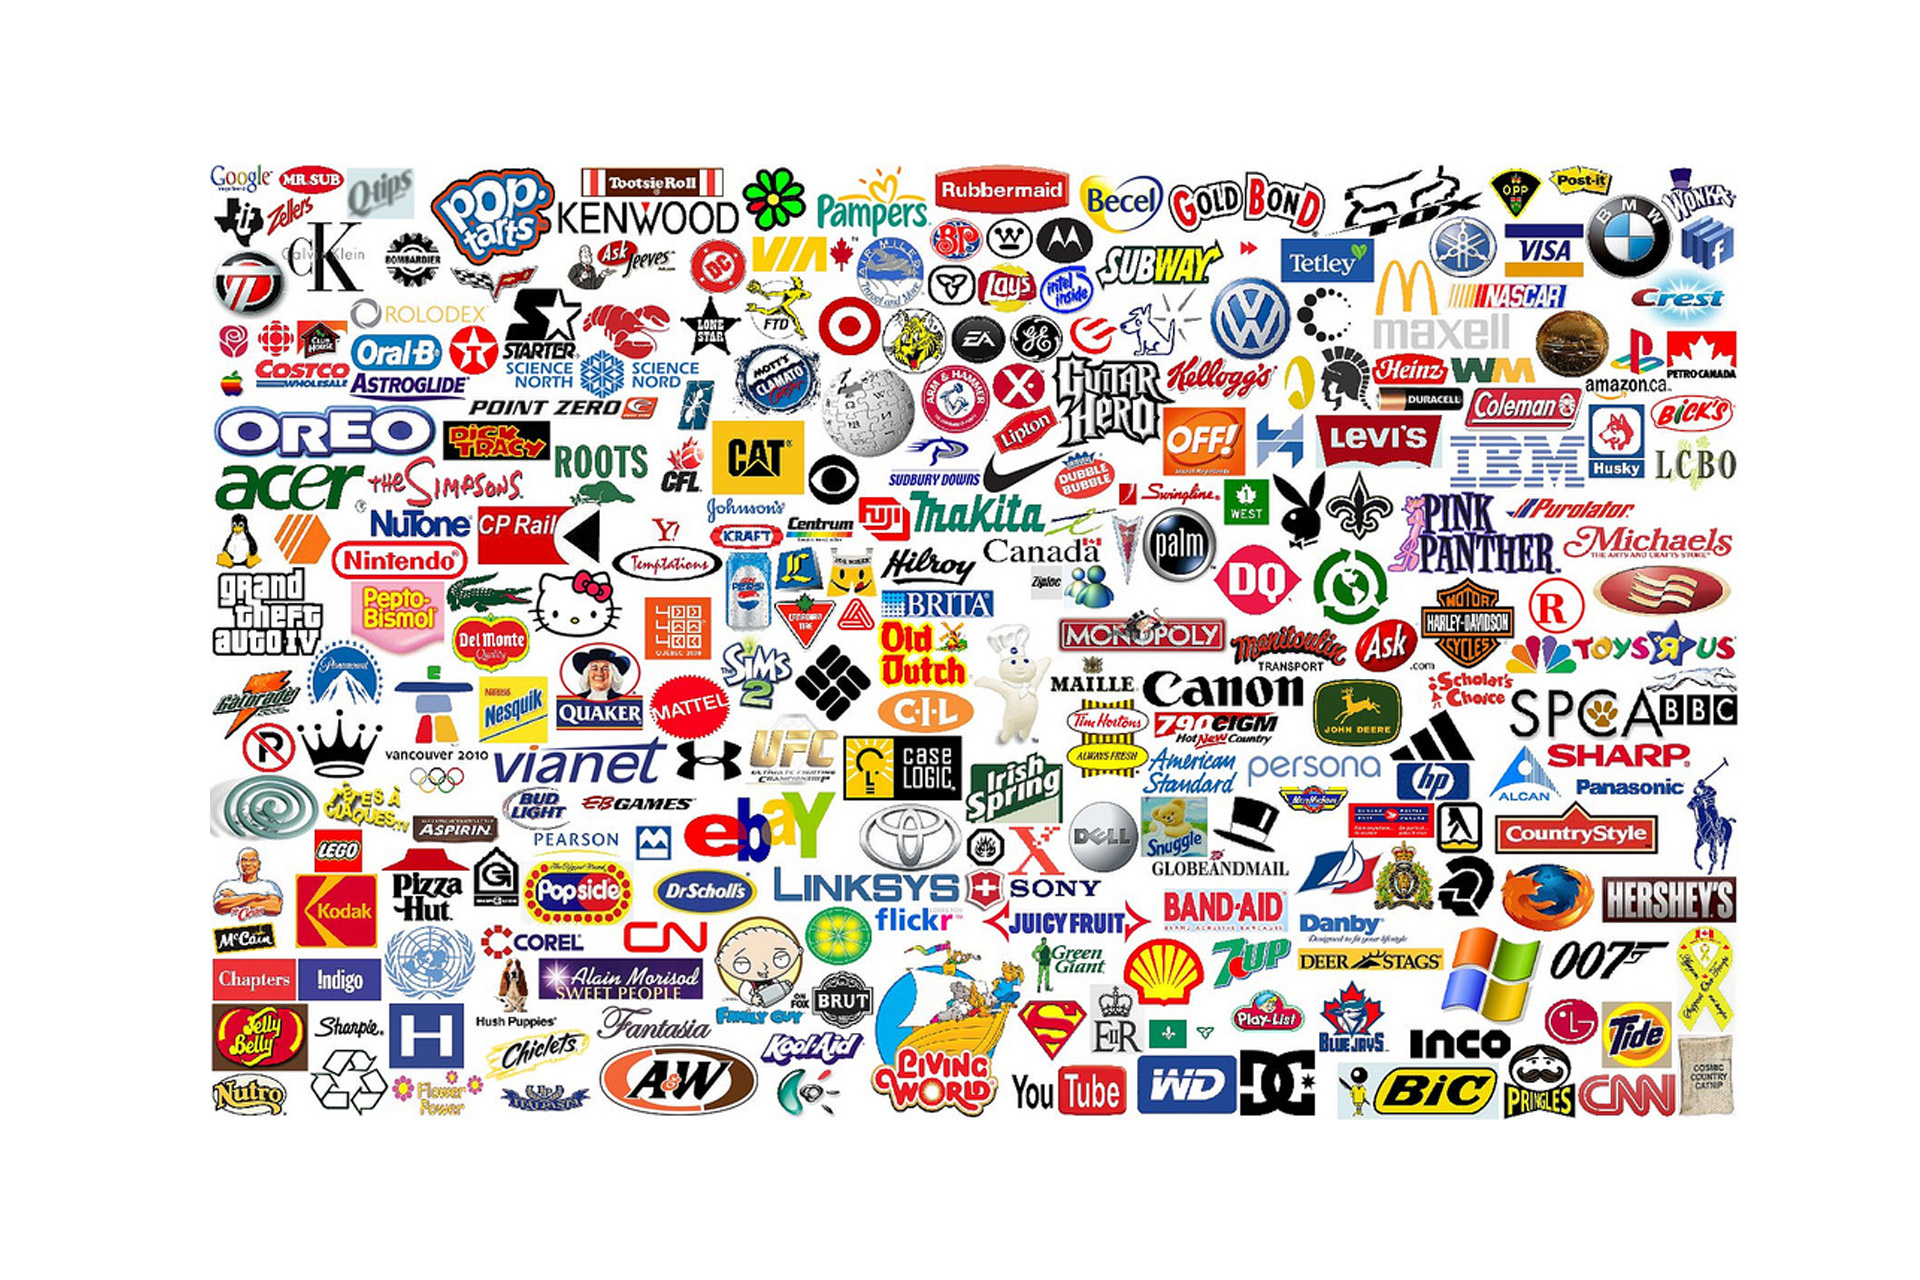 Много брендов на одной картинке